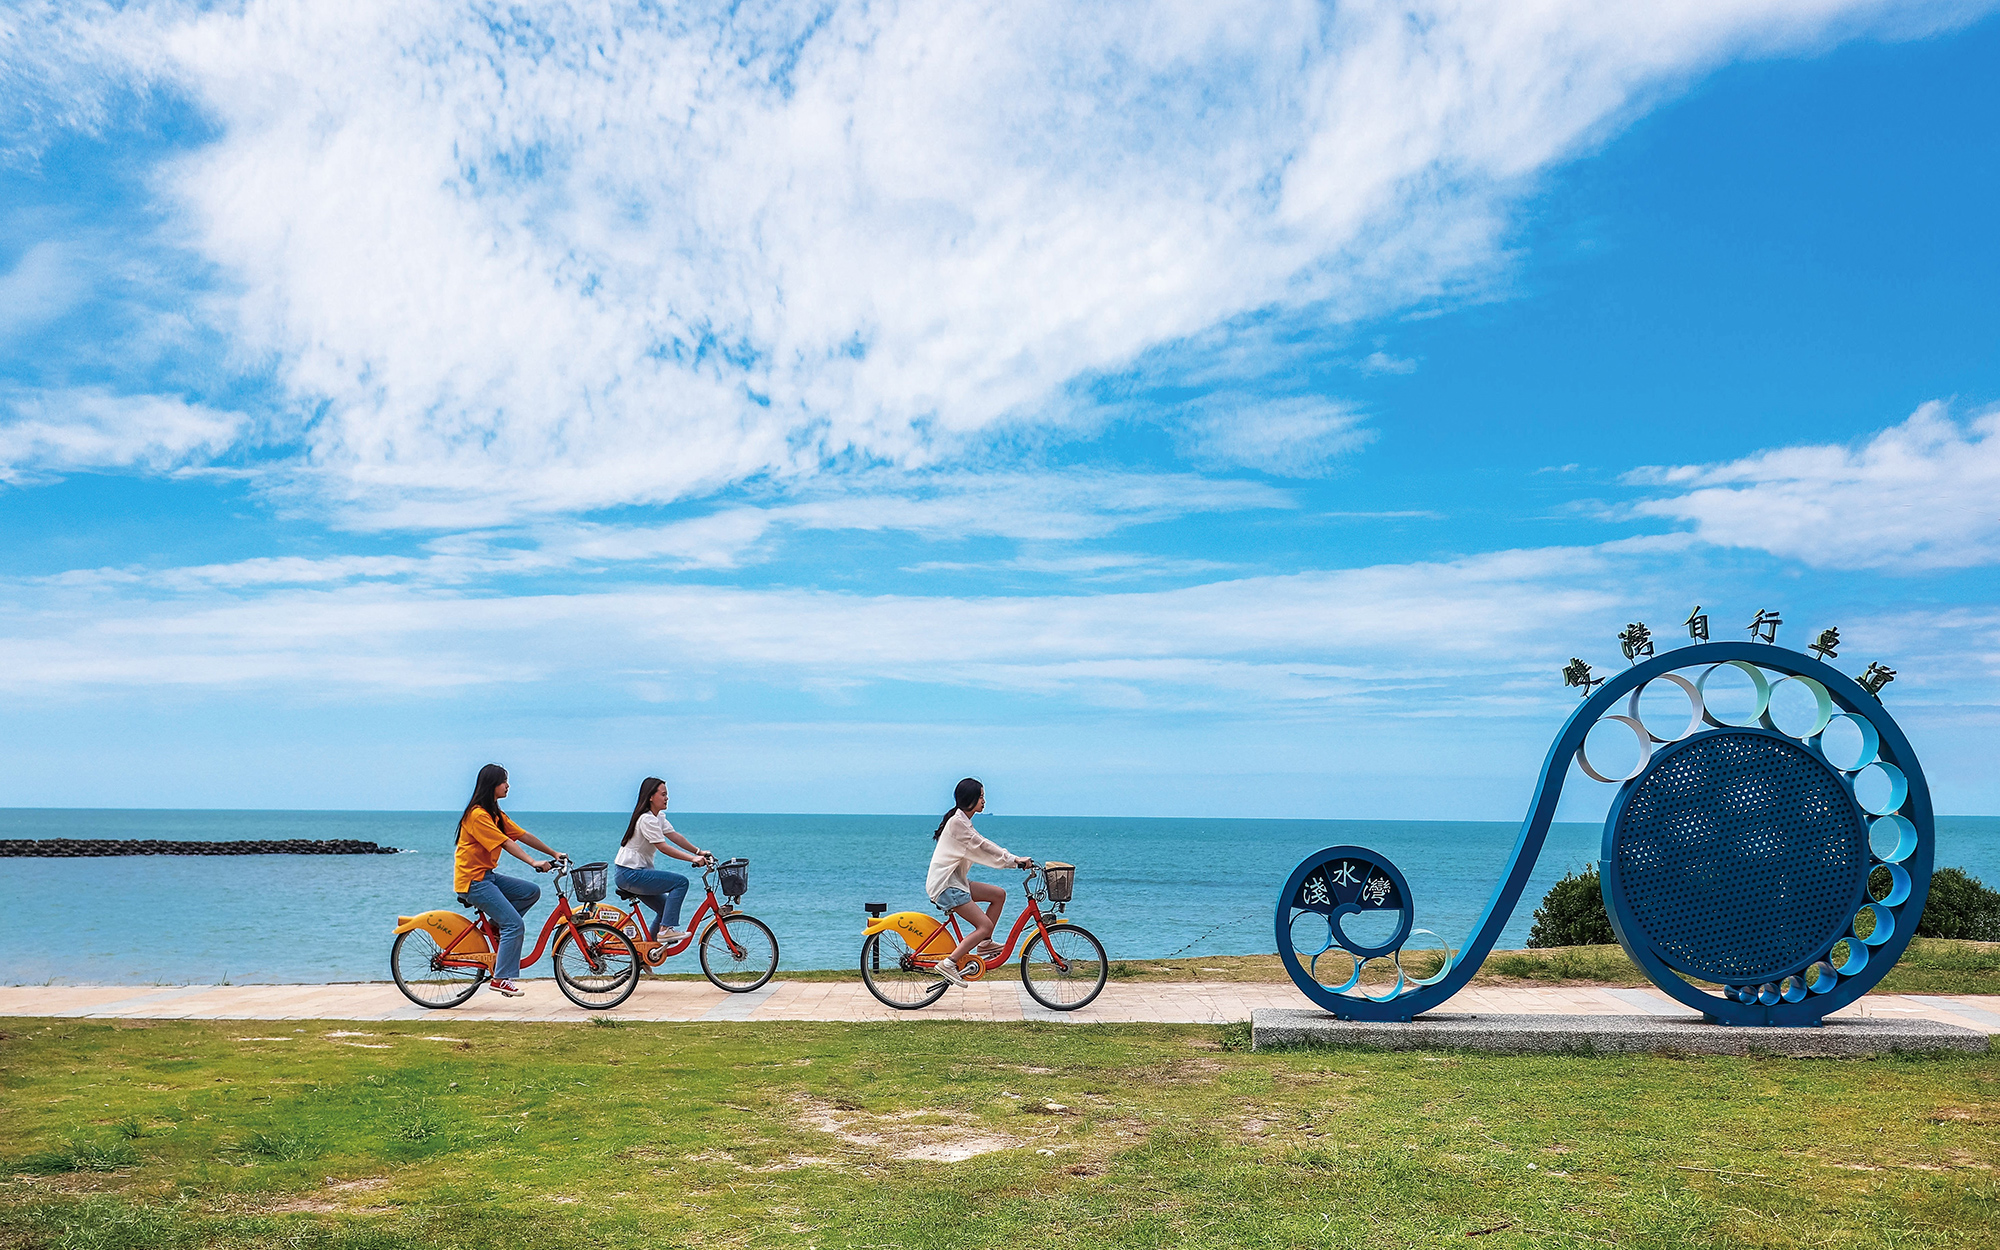 自転車は老若男女が楽しめる国民のスポーツであり、体力を鍛えられるだけでなく、美しい景色を眺められるのと同時に二酸化炭素を削減できるエコ旅行を実現できます。